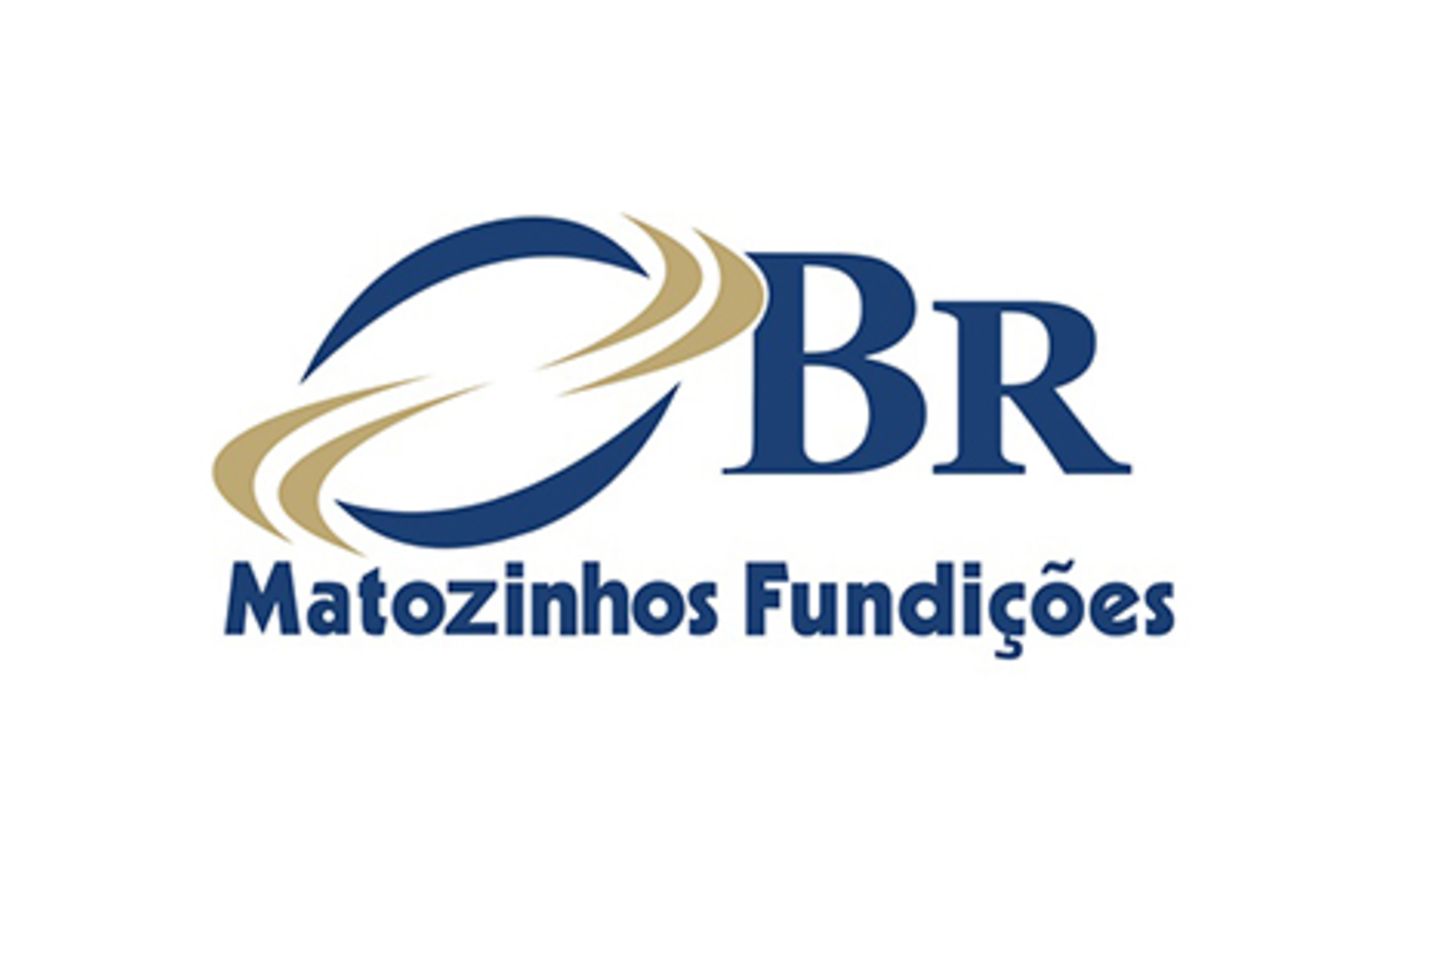 Logotipo da BR Matozinhos